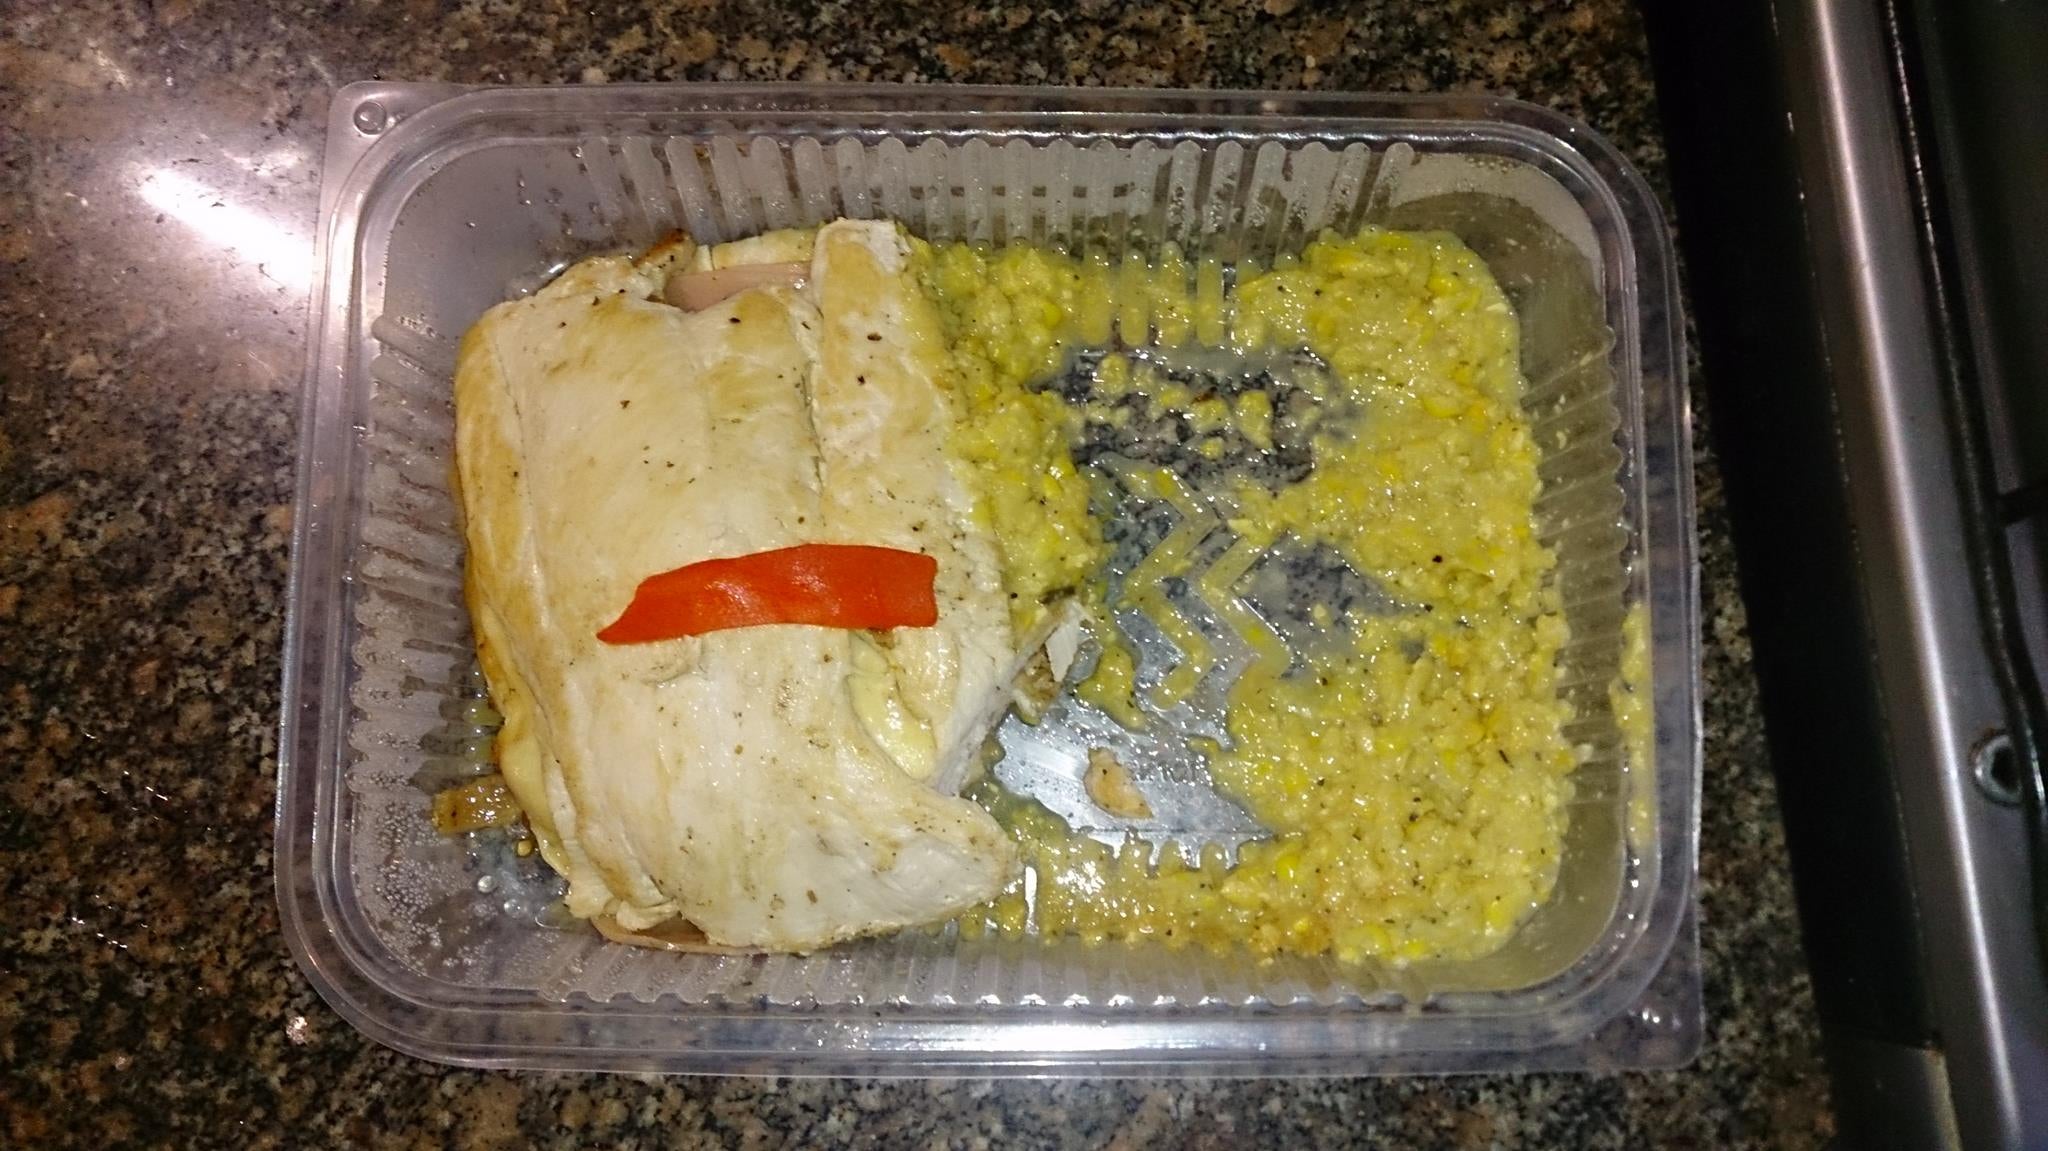 Belgrano Sandwich